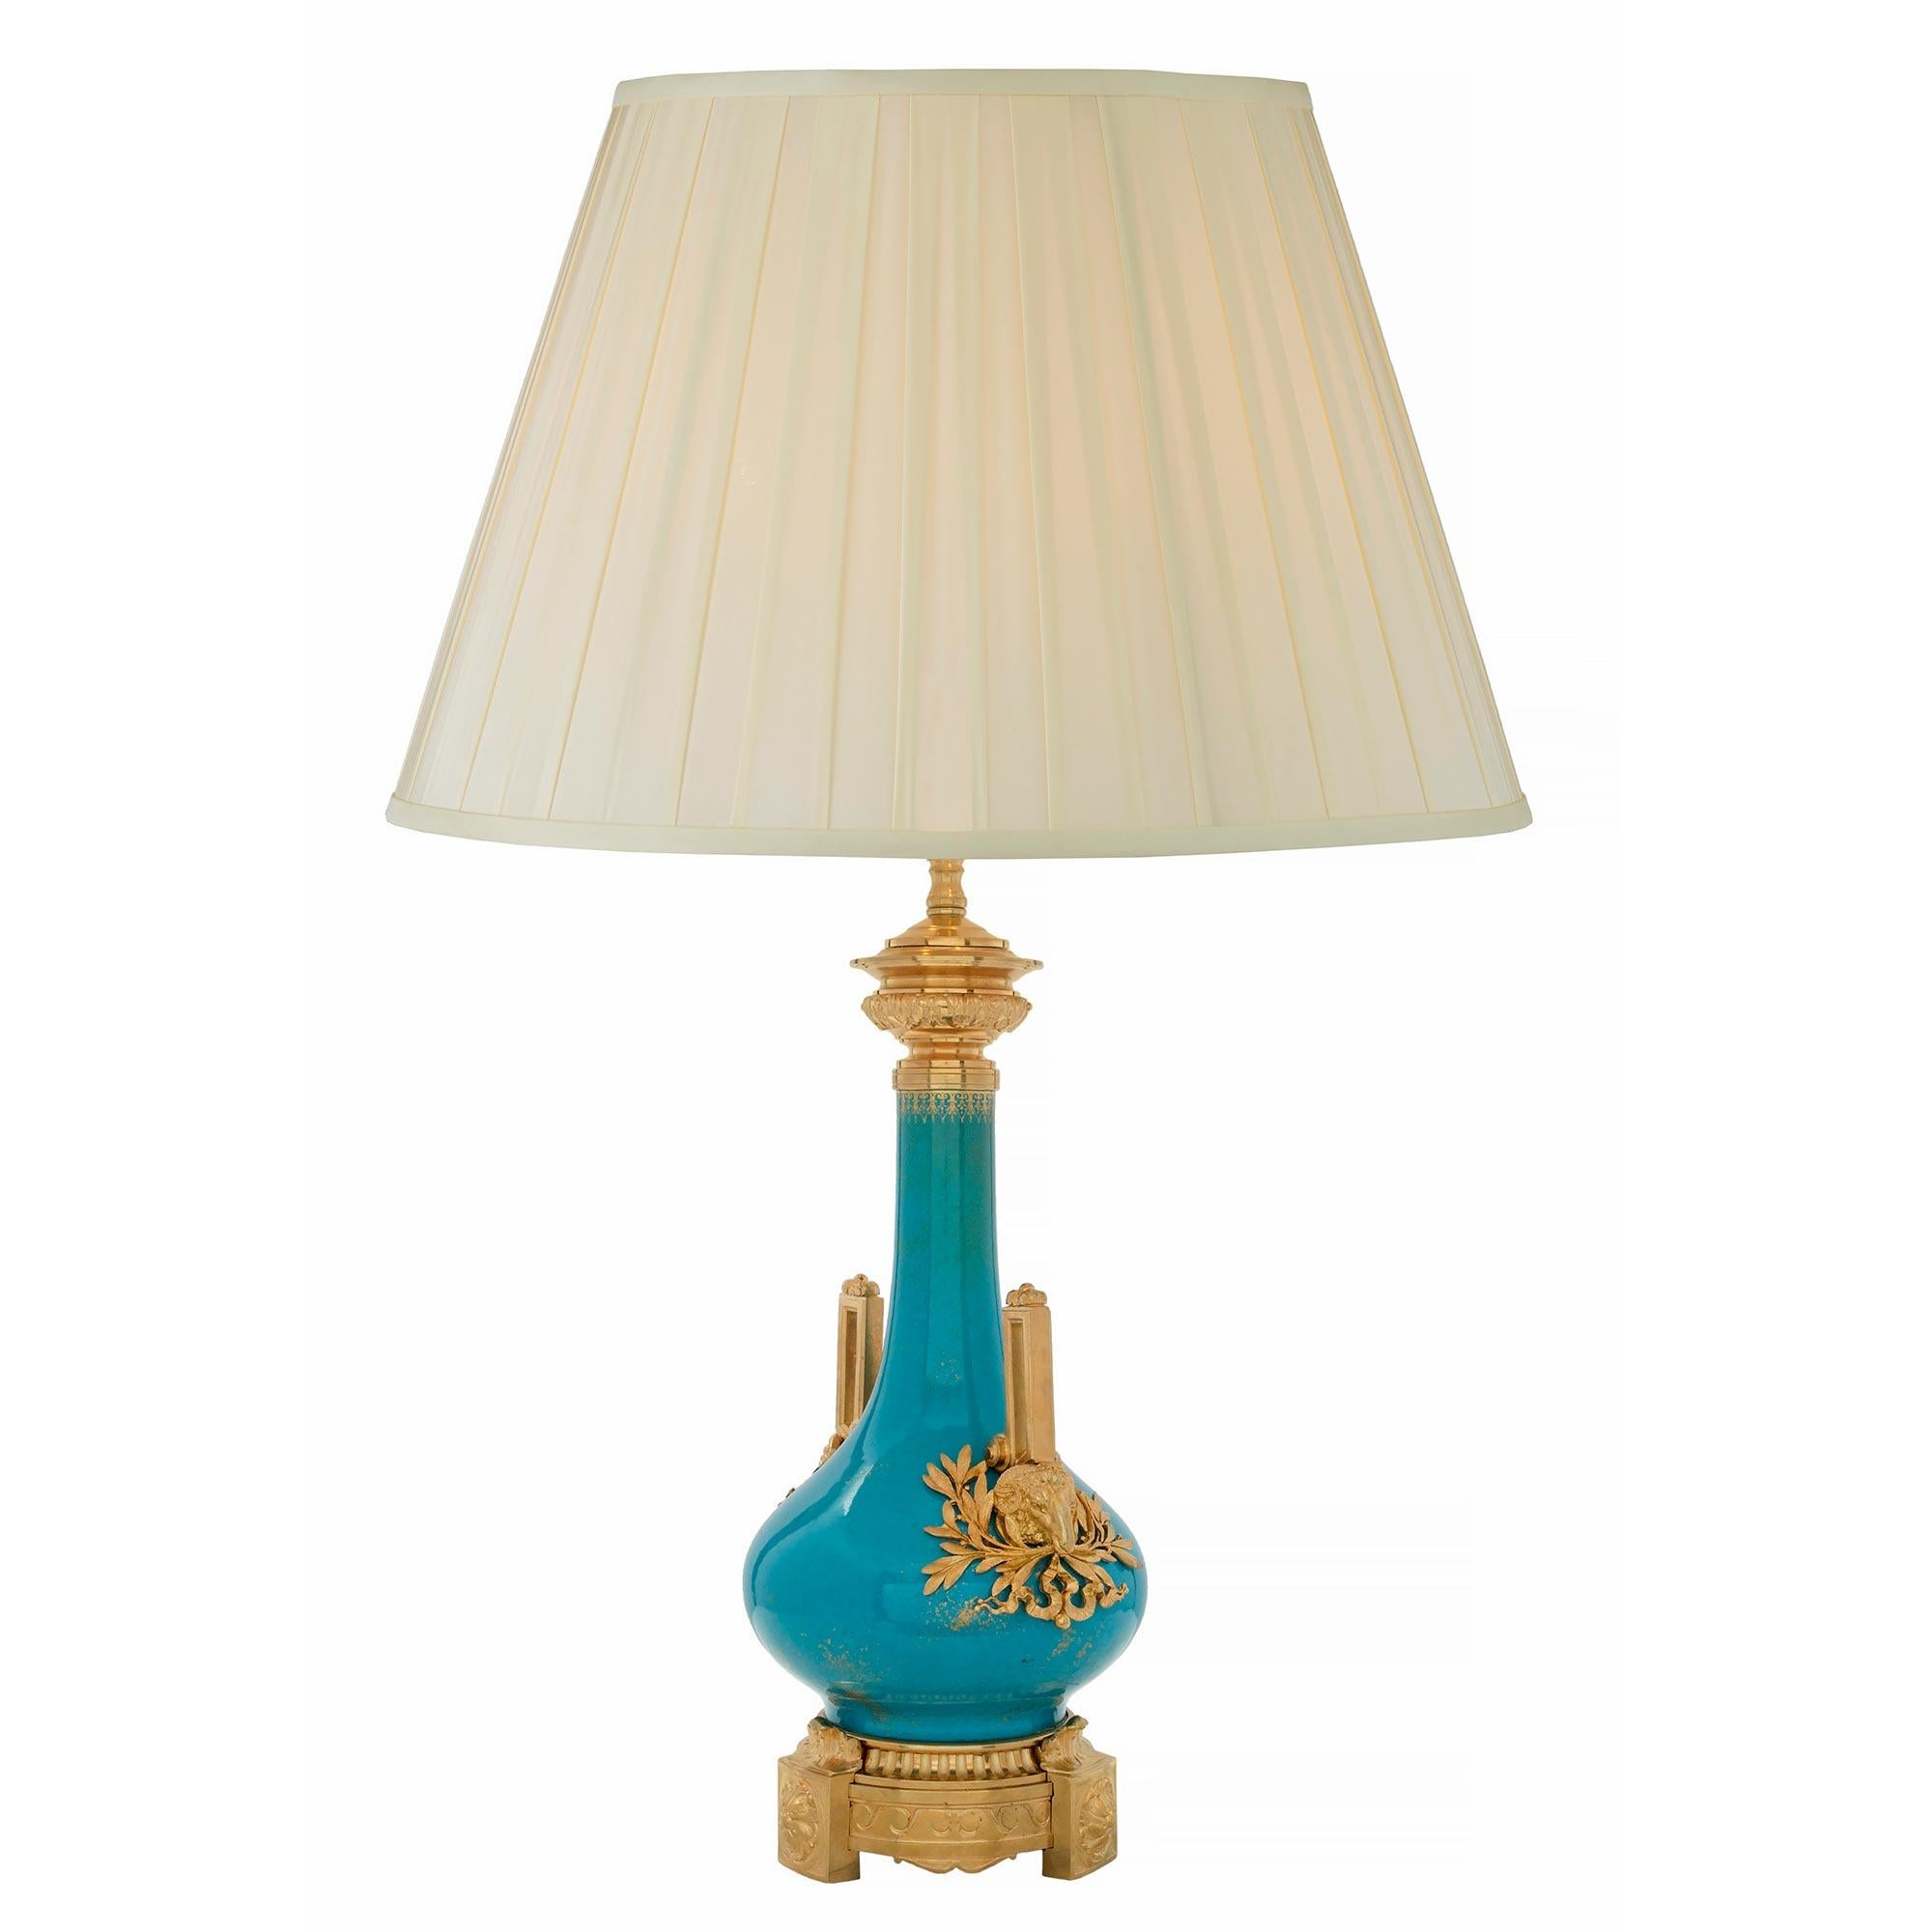 Eine wunderschöne französische Porzellan- und Ormolu-Lampe aus dem 19. Jahrhundert. Die Leuchte steht auf einem runden Ormolu-Sockel mit sehr dekorativen, vorspringenden Blockrosettenfüßen, die von vitruvianischen Schnecken flankiert werden. Der